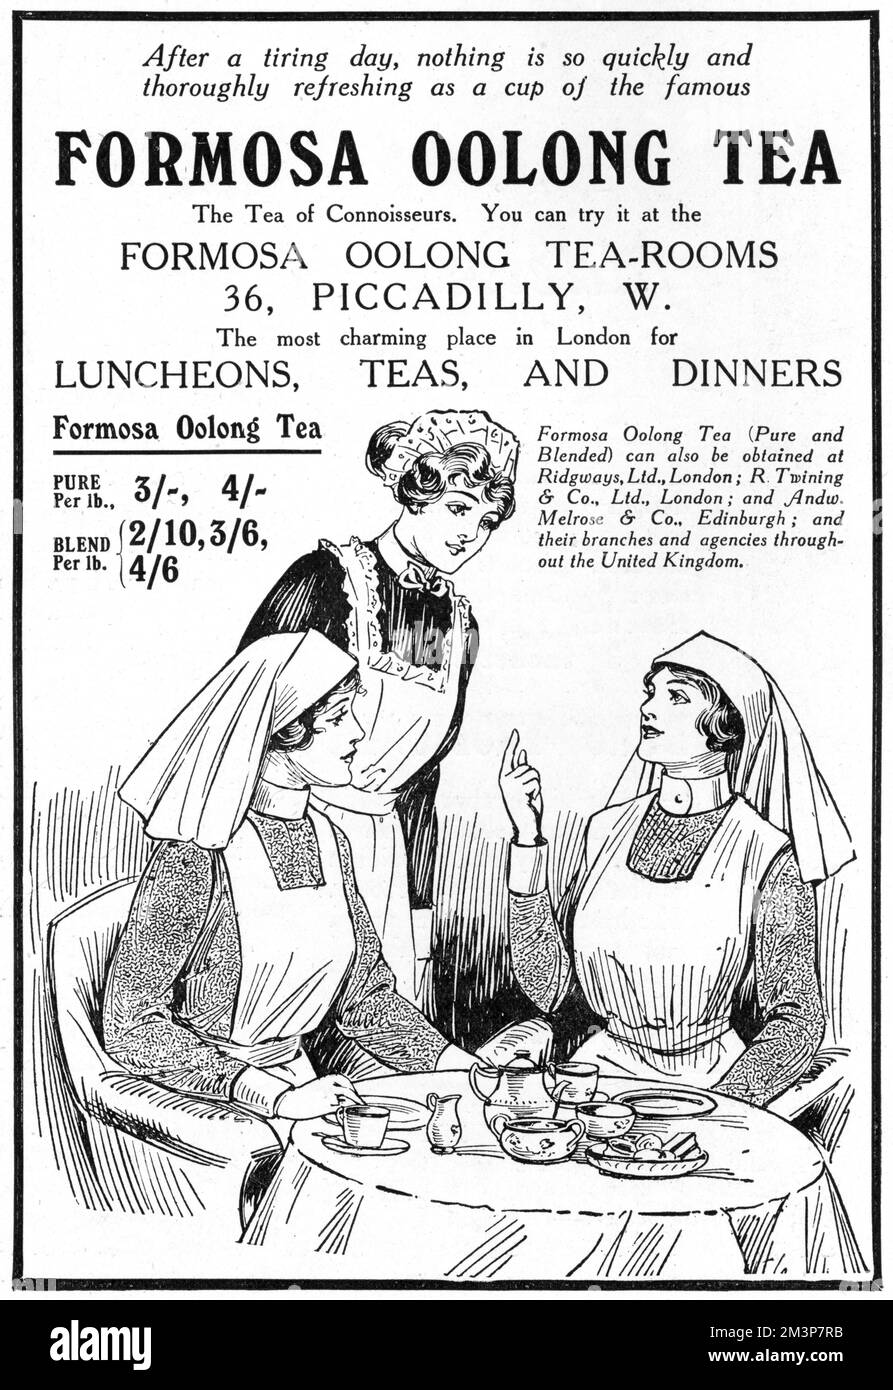 Werbung für Formosa Oolong Tea Rooms, der perfekte Ort, um sich nach einem anstrengenden Tag der Kriegsarbeit zu entspannen, wie diese Krankenschwestern abgebildet. Die Teestube befinden sich in Piccadilly und waren 'der charmanteste Ort in London für Mittag-, Tee- und Abendessen'. Datum: 1917 Stockfoto